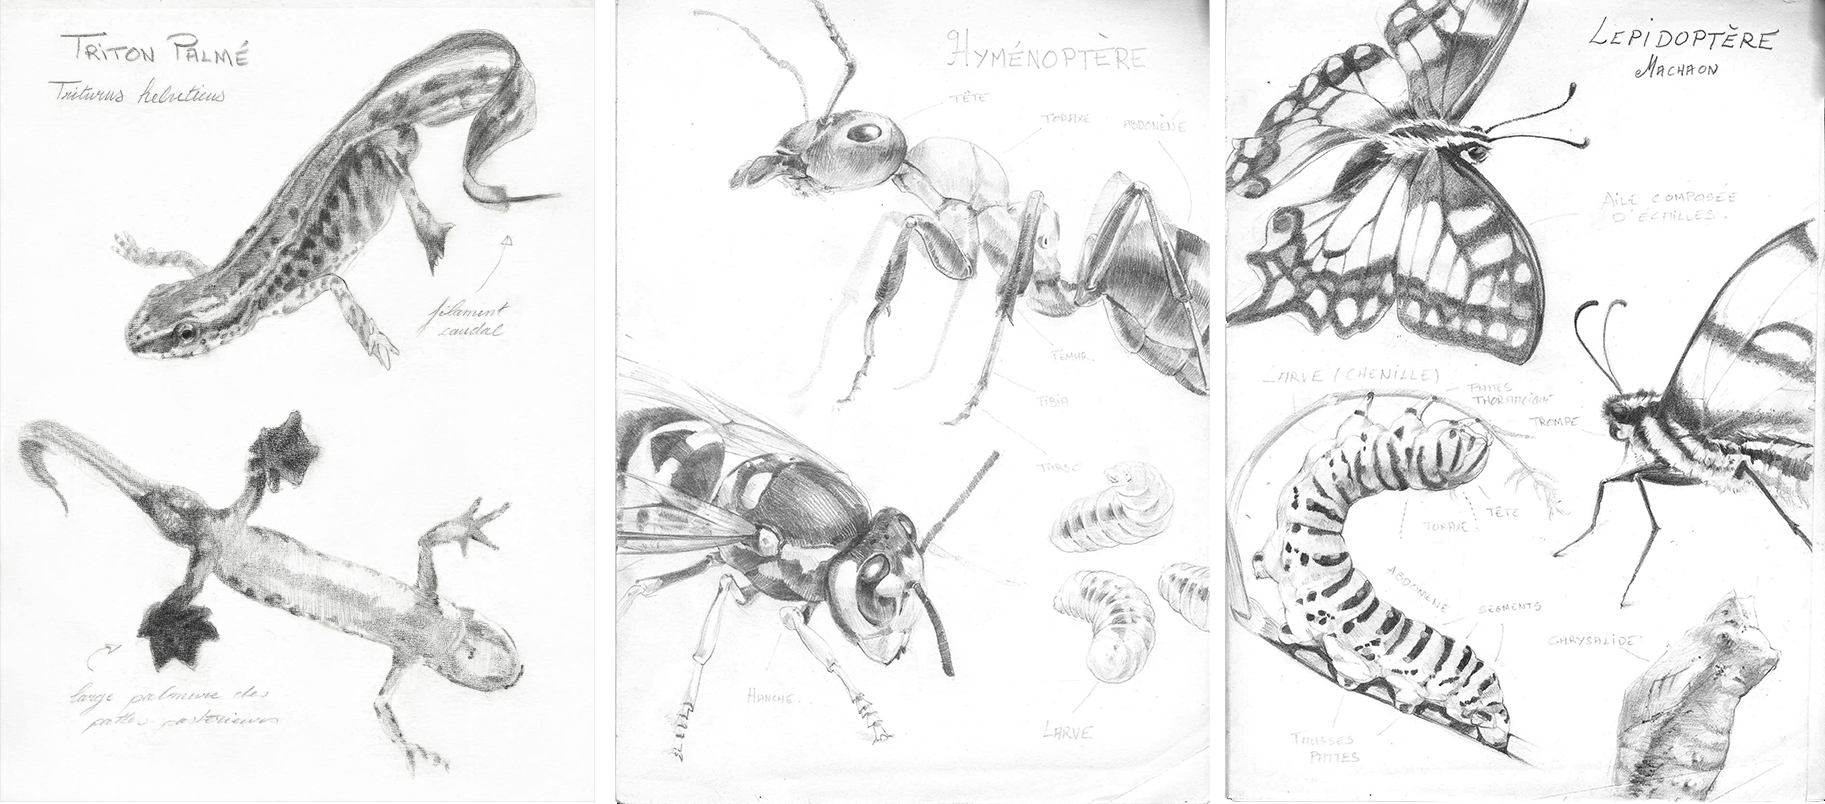 Etude naturalistes<br/><span>-Batracien et entomologie. 
Graphite sur papier.</span>